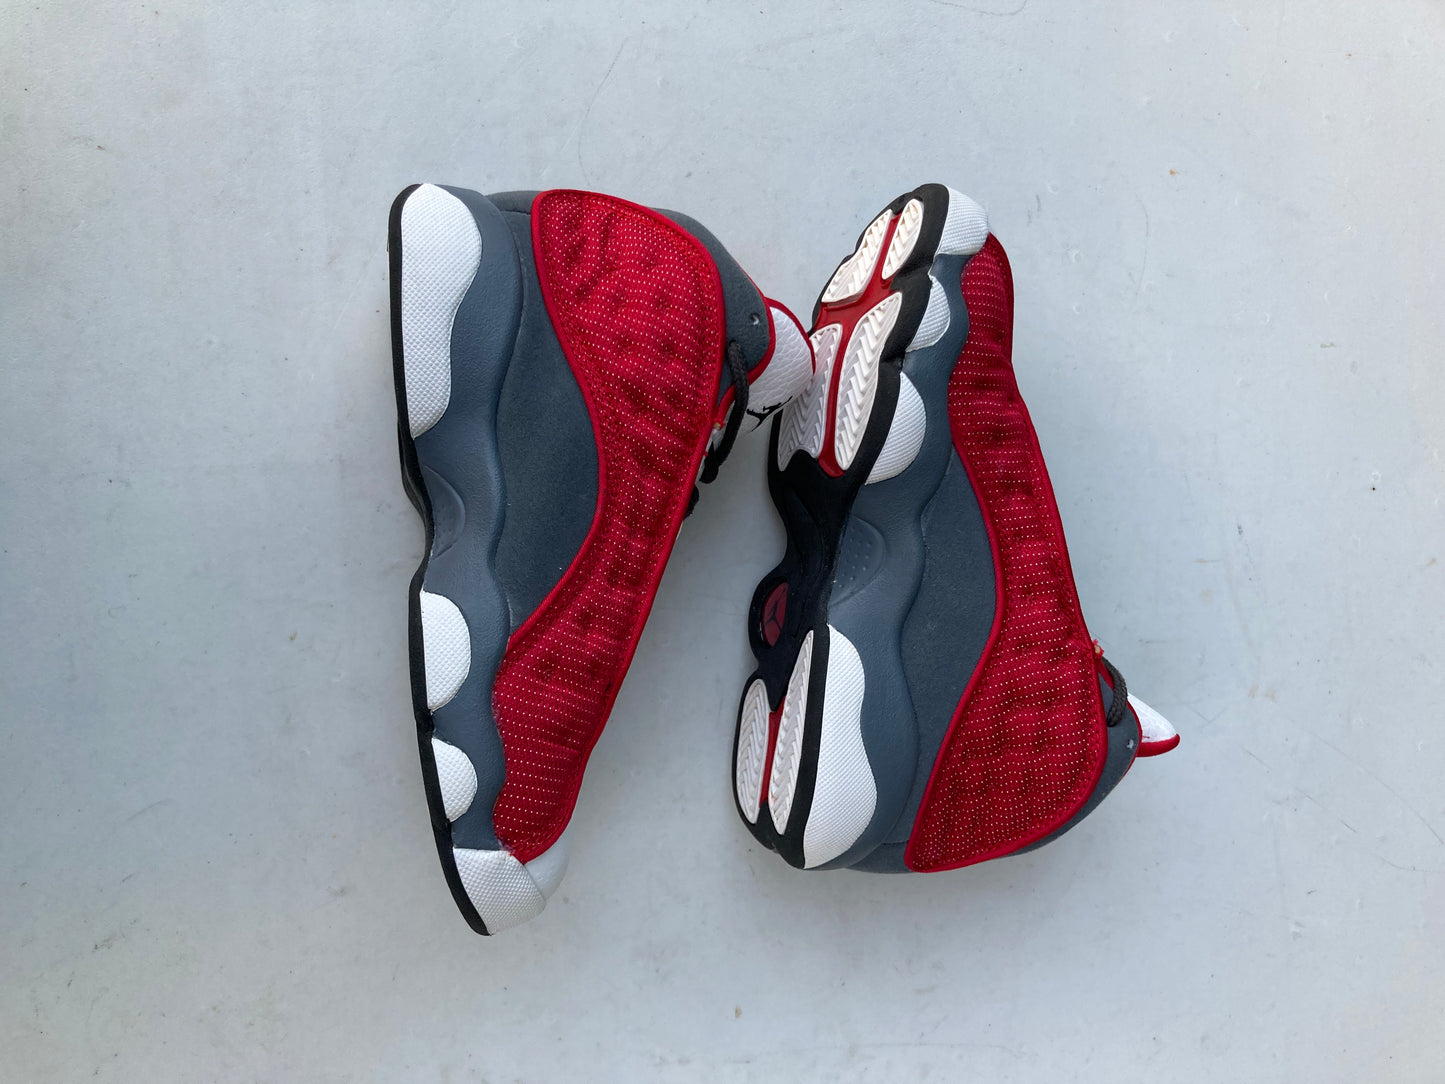 Nike Air Jordan 13 Retro Red Flint Grey (Boys)